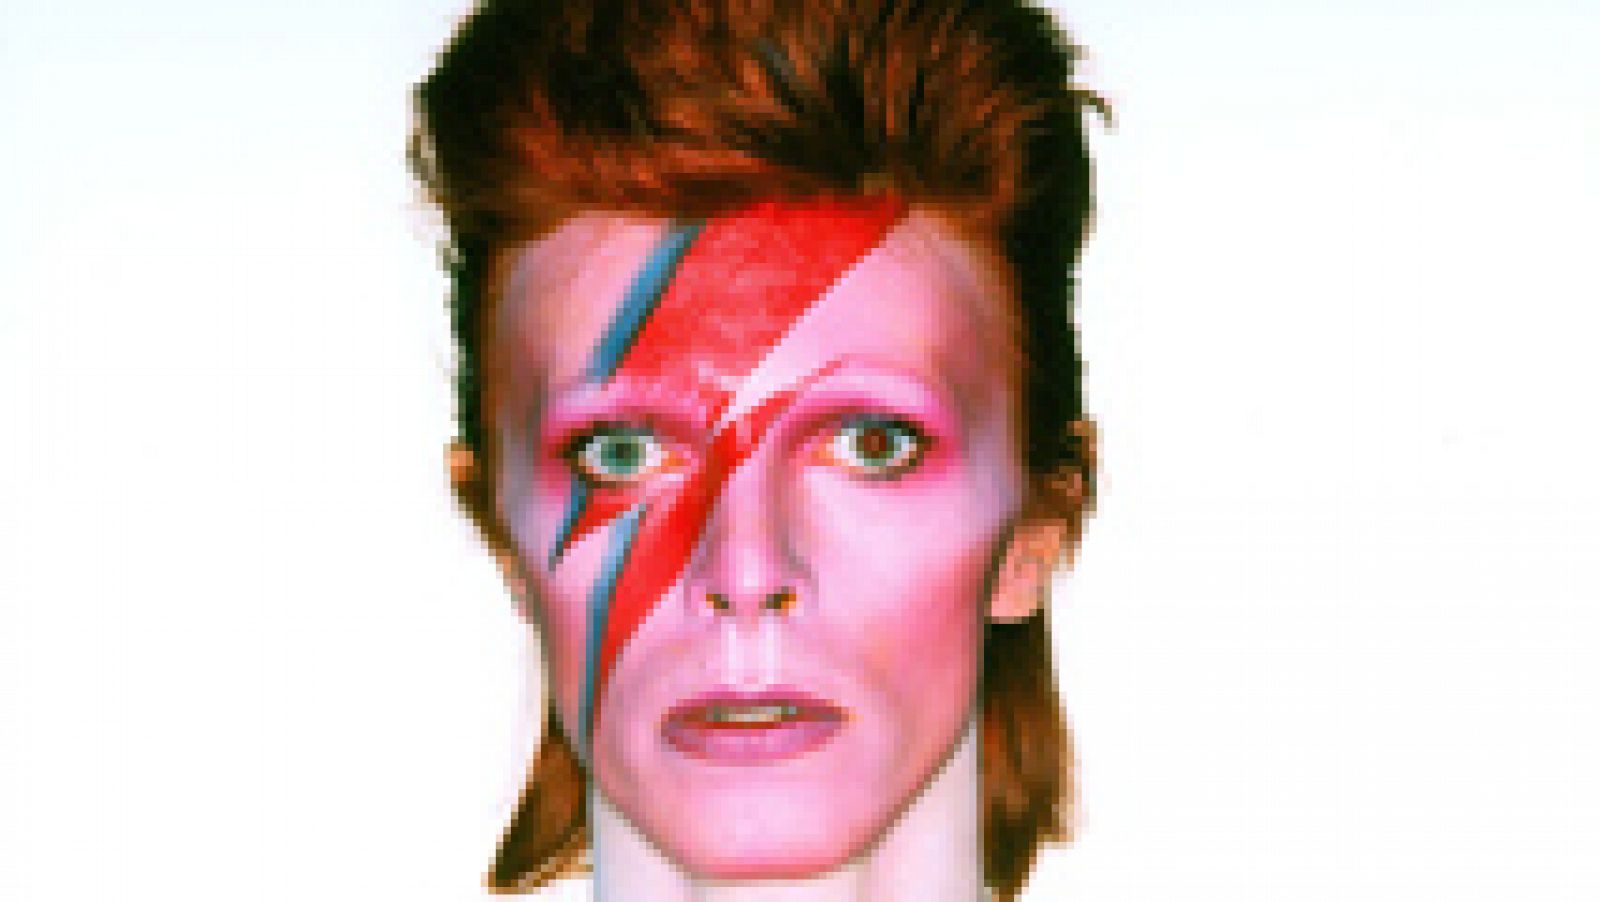 La exposición "David Bowie IS" aterriza en Barcelona después de haber recorrido una decena de países